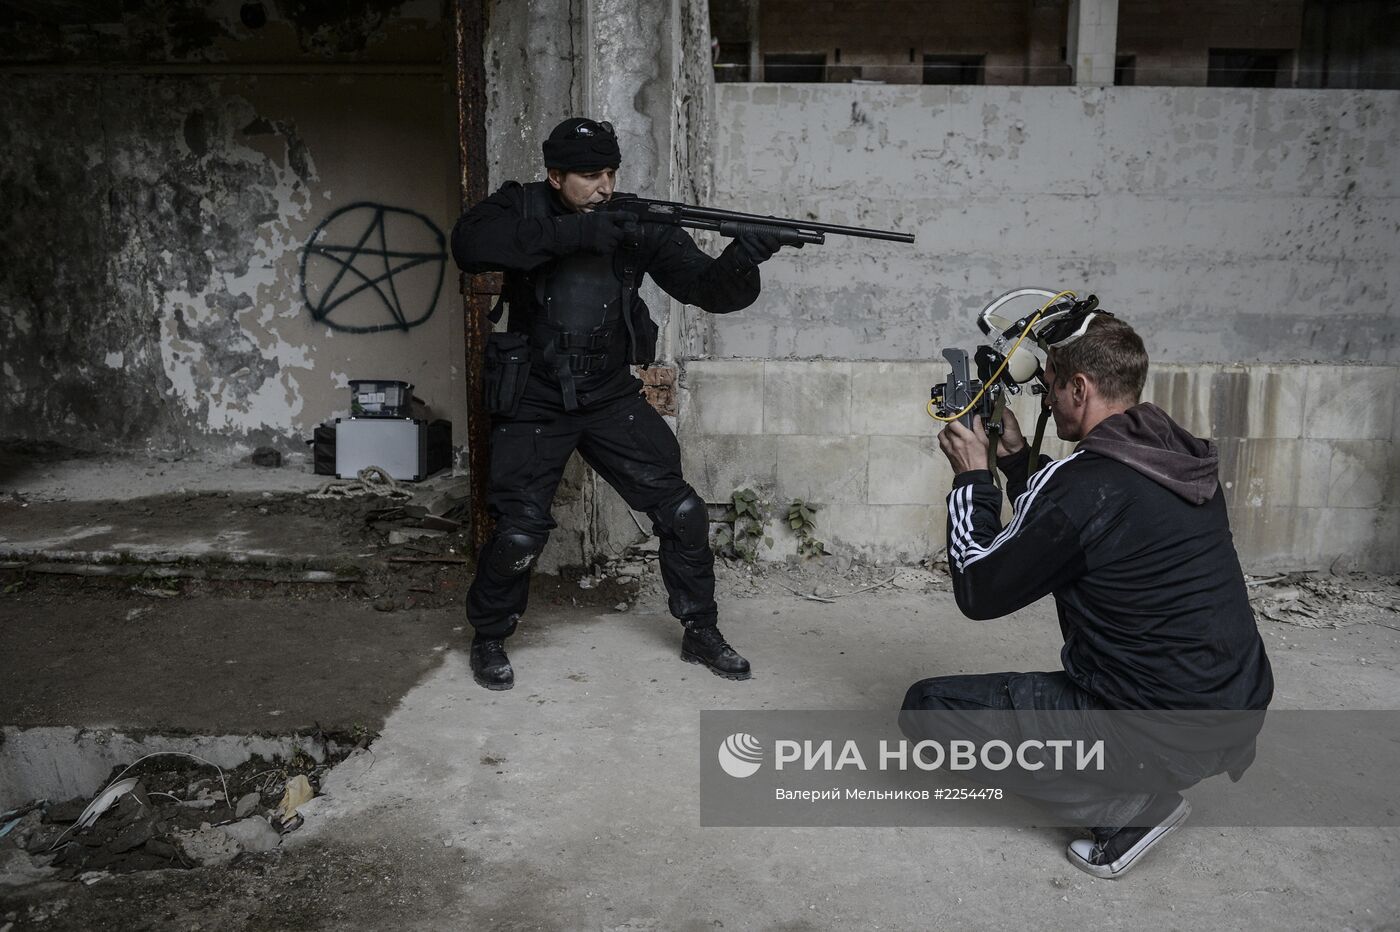 Съемки экспериментального боевика "Хардкор" в Тверской области